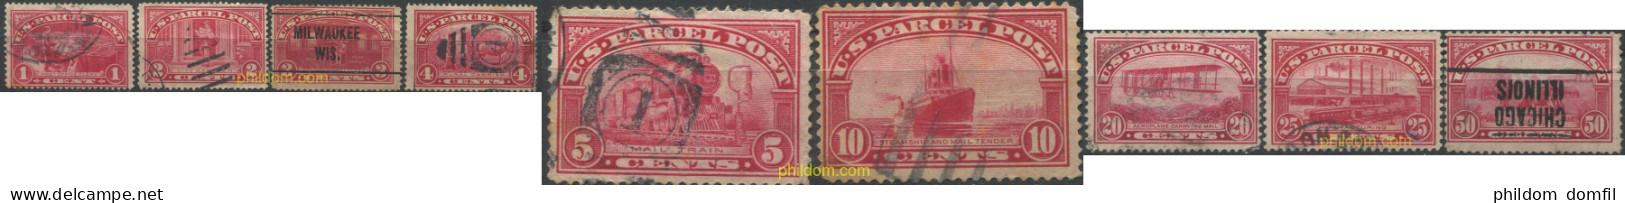 707496 USED ESTADOS UNIDOS 1912 PAQUETES POSTALES - Unused Stamps